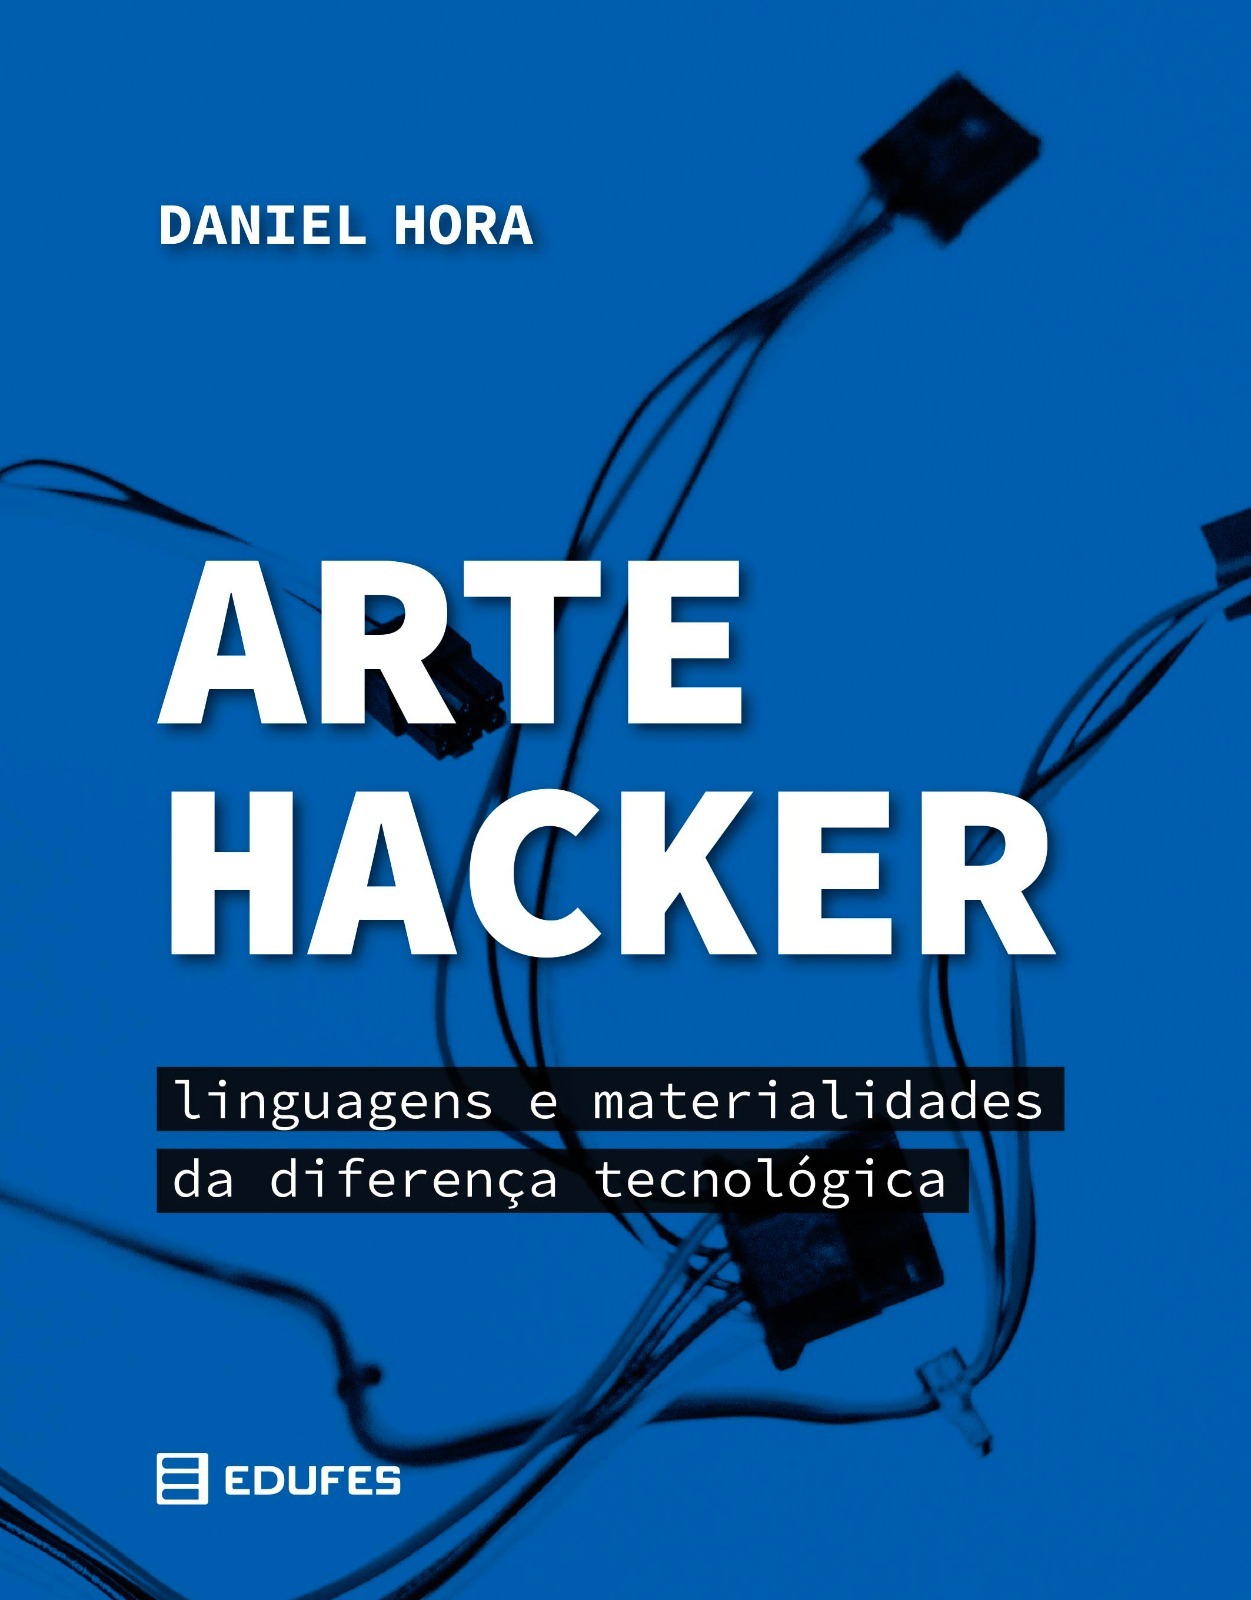 Capa do livro, com fundo azul e, em preto, a imagem de cabos de computador. Escrito em letras maiúsculas brancas o título Arte Hacker e, abaixo, em letras pretas, linguagens e materialidades da diferença tecnológica.